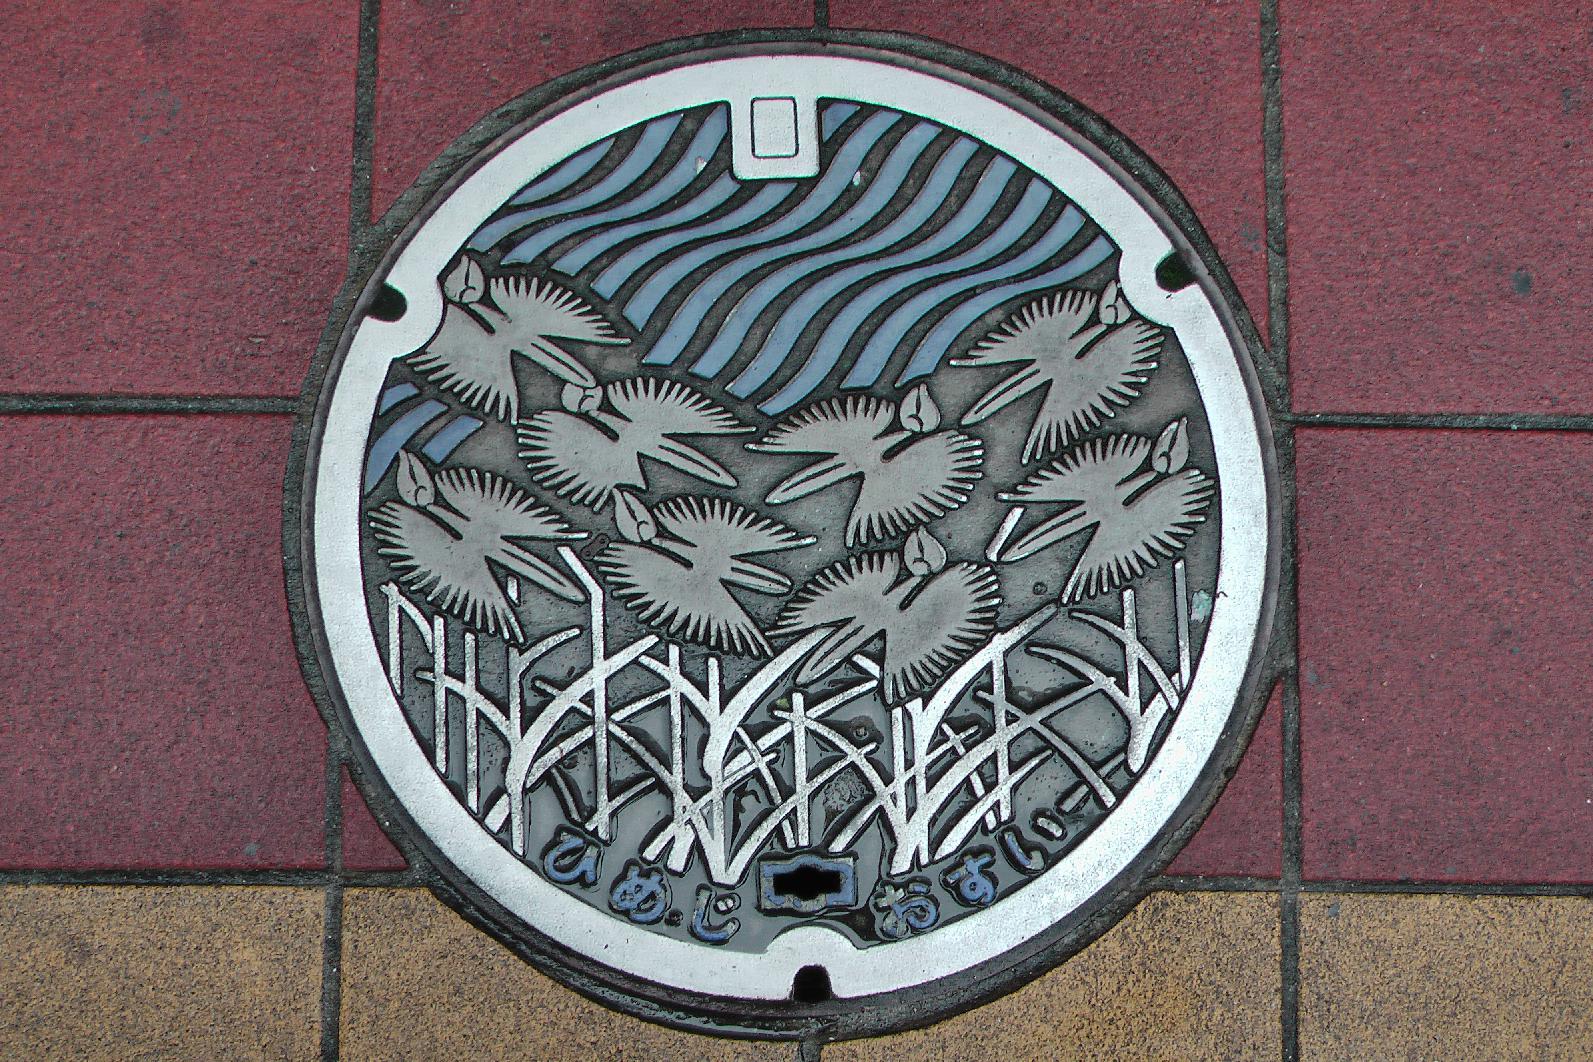 Manhole cover in Himeji